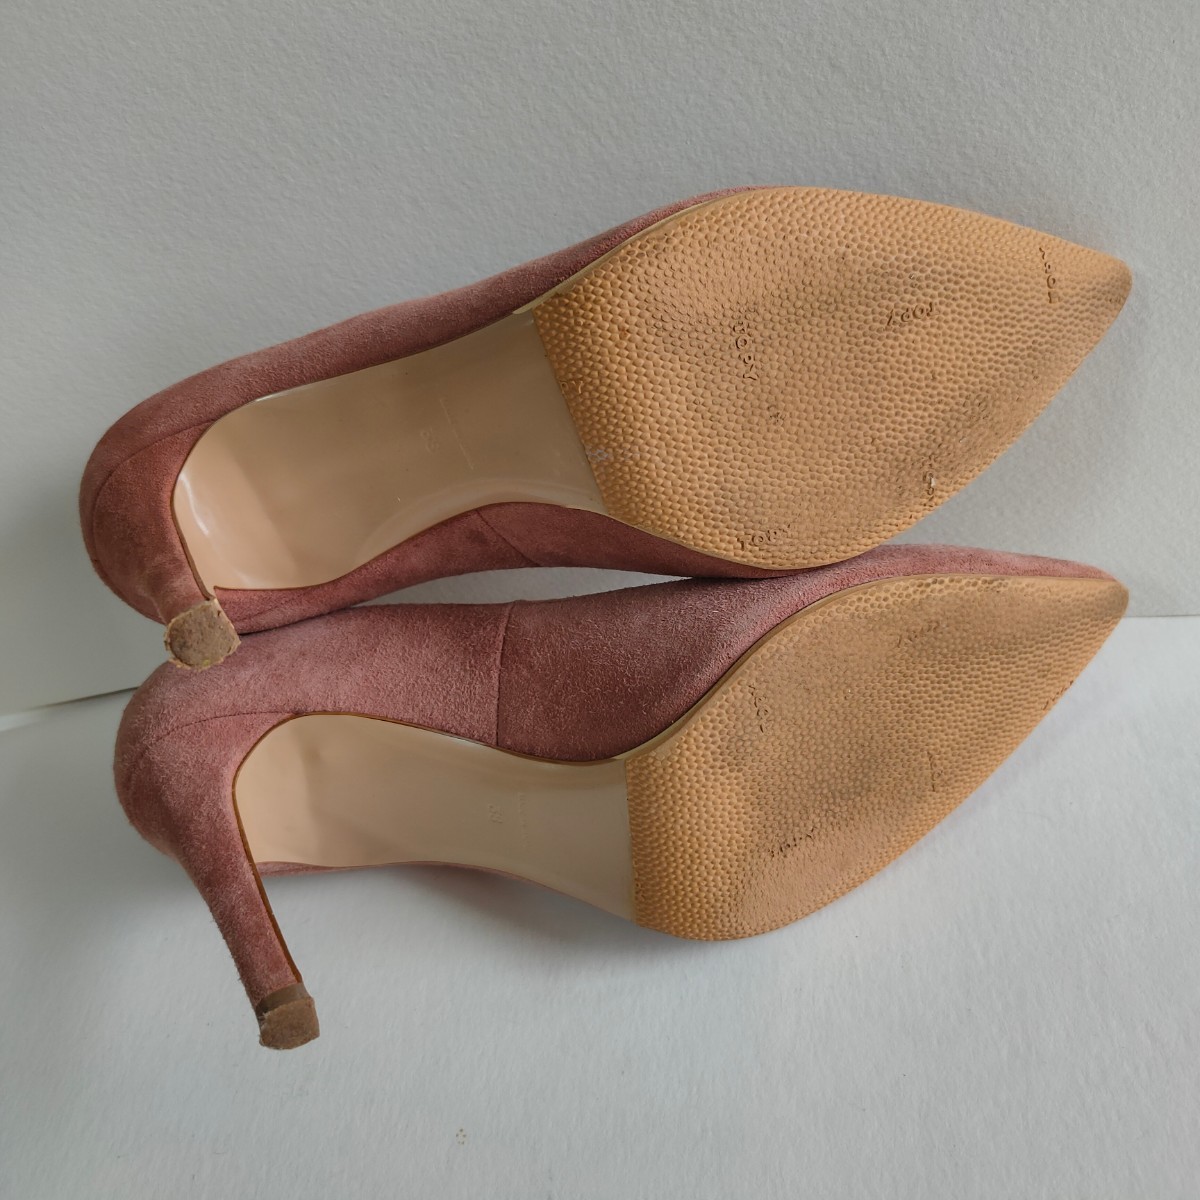  beautiful goods PIPPICHICpipi Schic high heel pumps original leather suede sombreness pink 24cm heel pumps 38